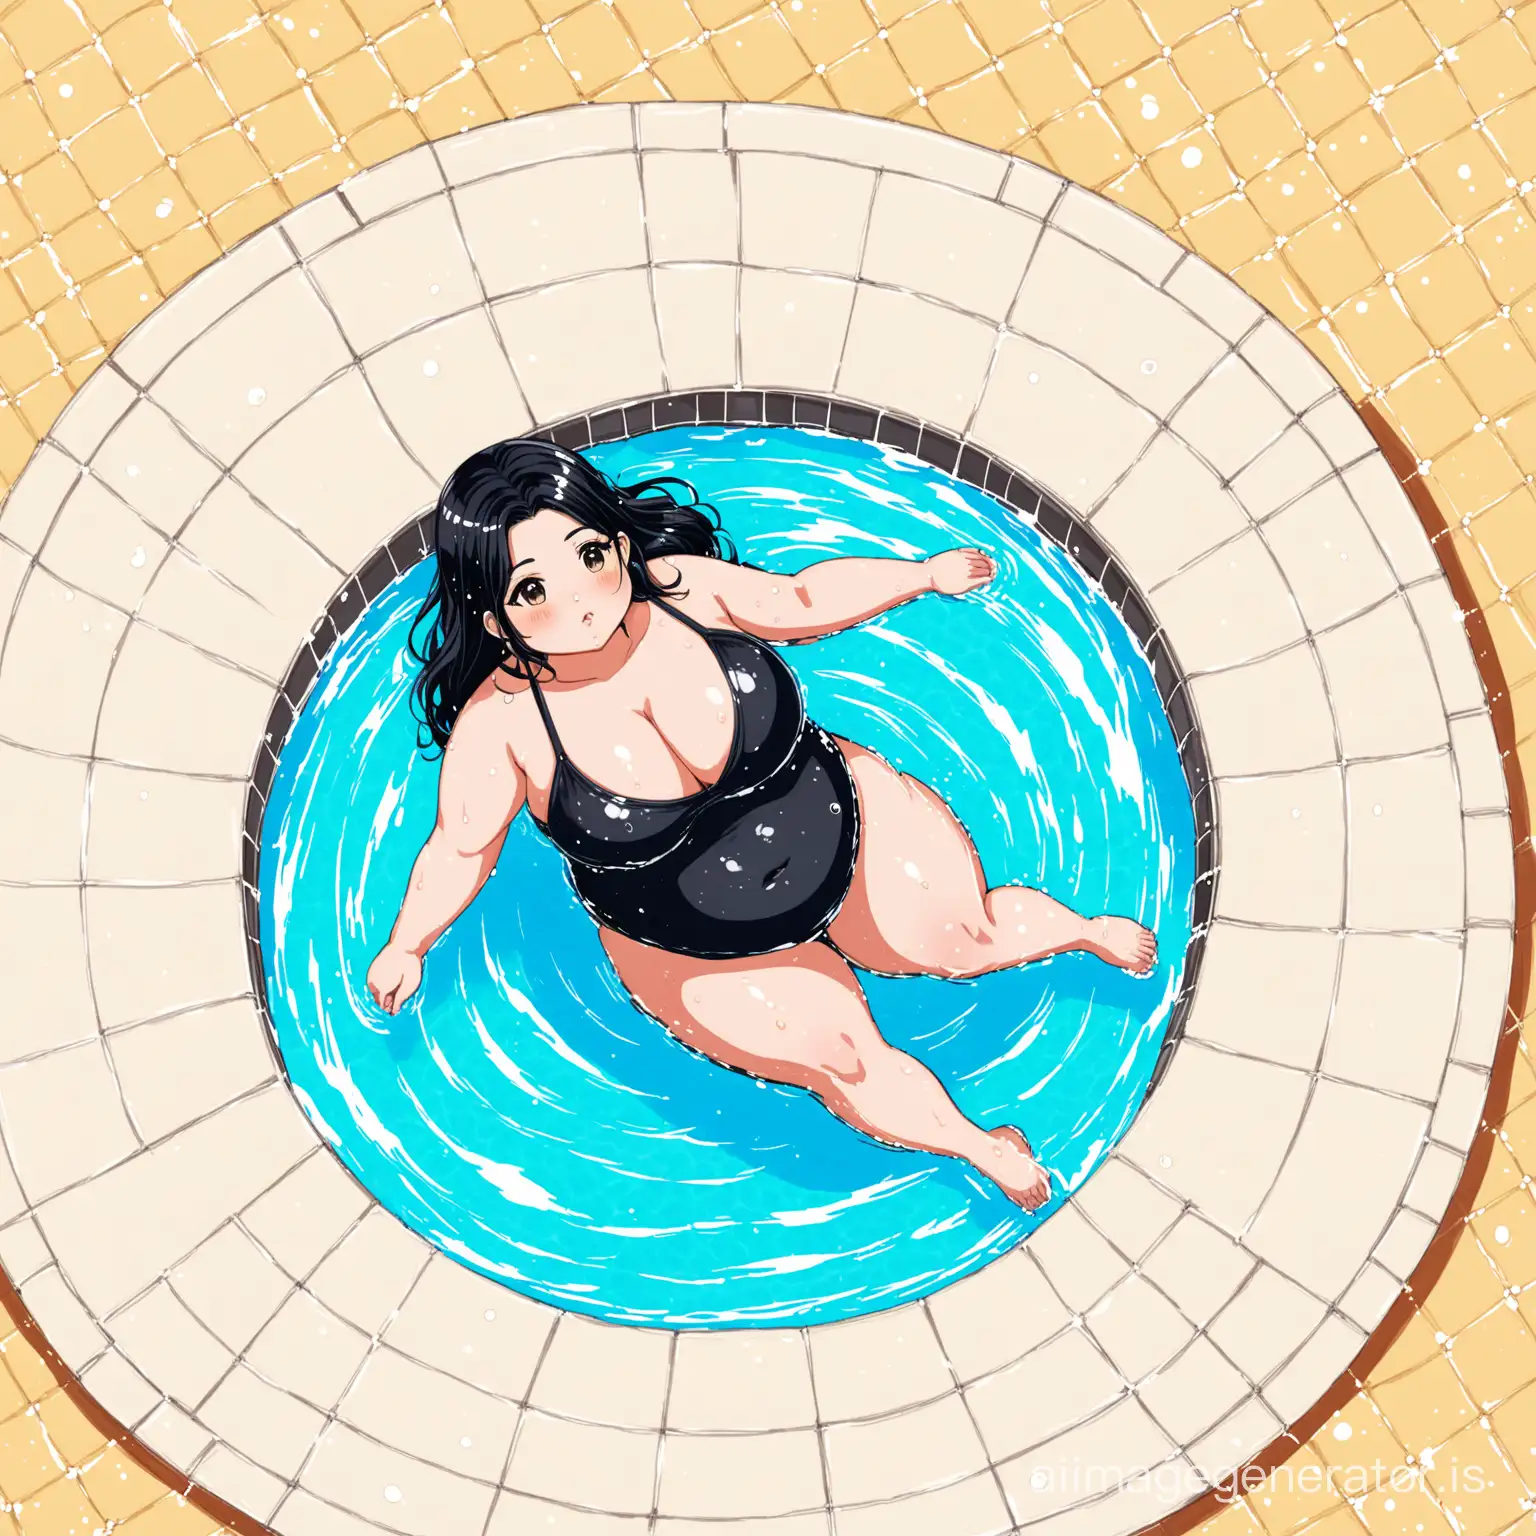 Chubby-Bengali-Woman-Swimming-in-a-Vibrant-Pool-Joyful-Josei-Anime-Style-Artwork